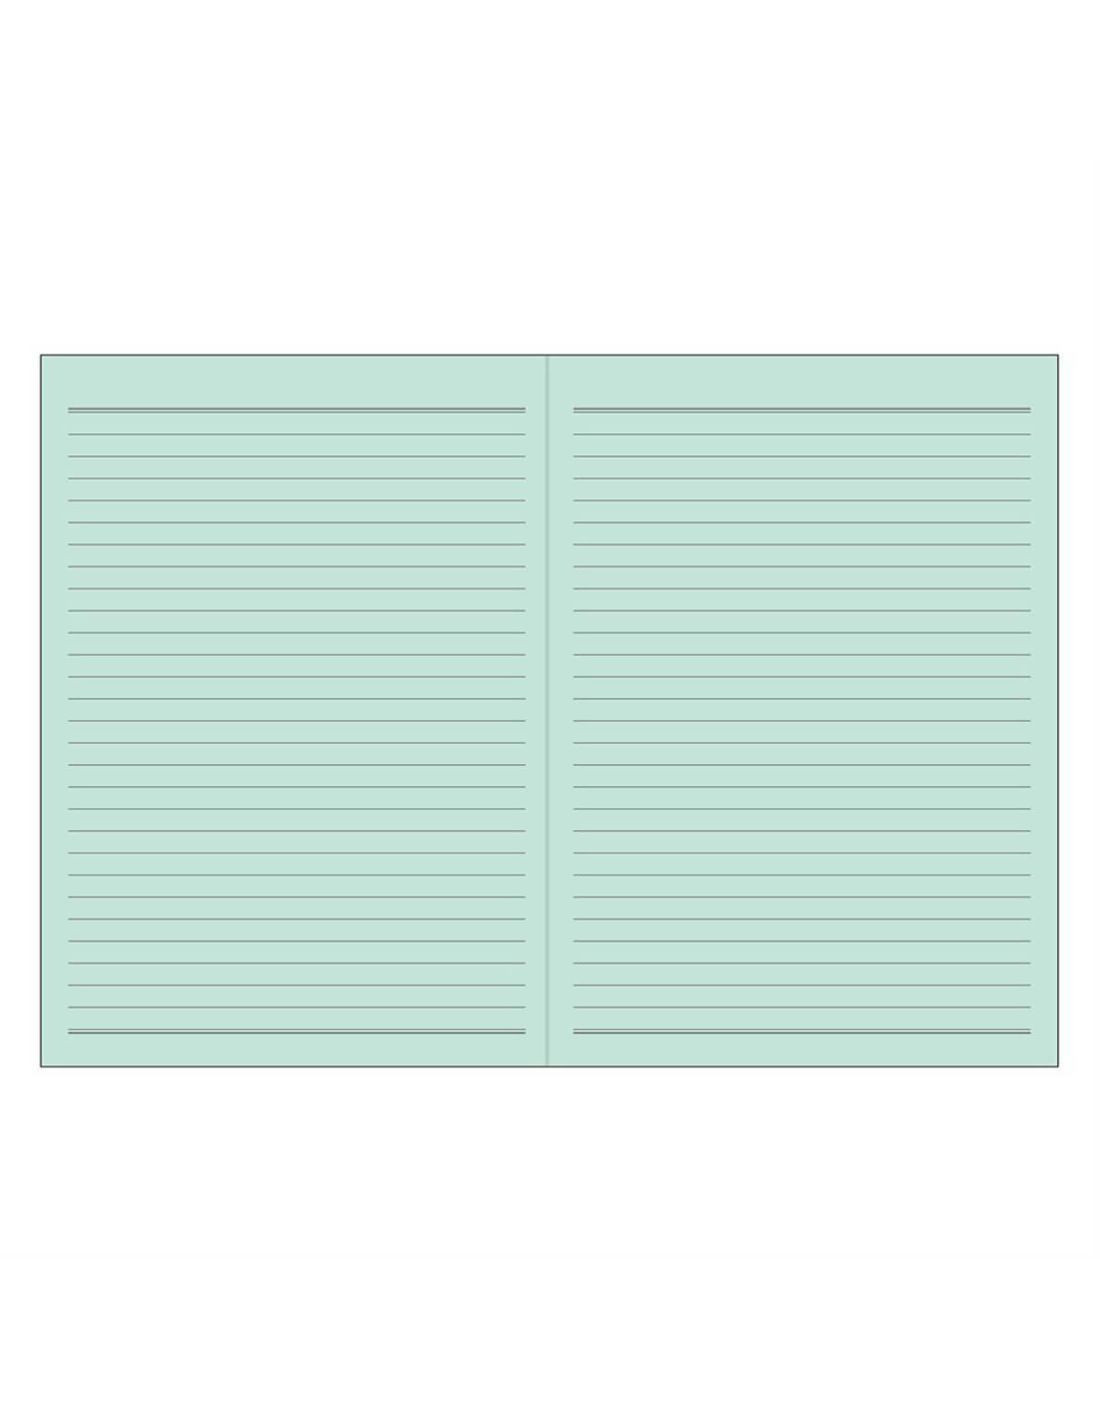 Cahier A5 ligné - Papier coloré - Bleu - Midori